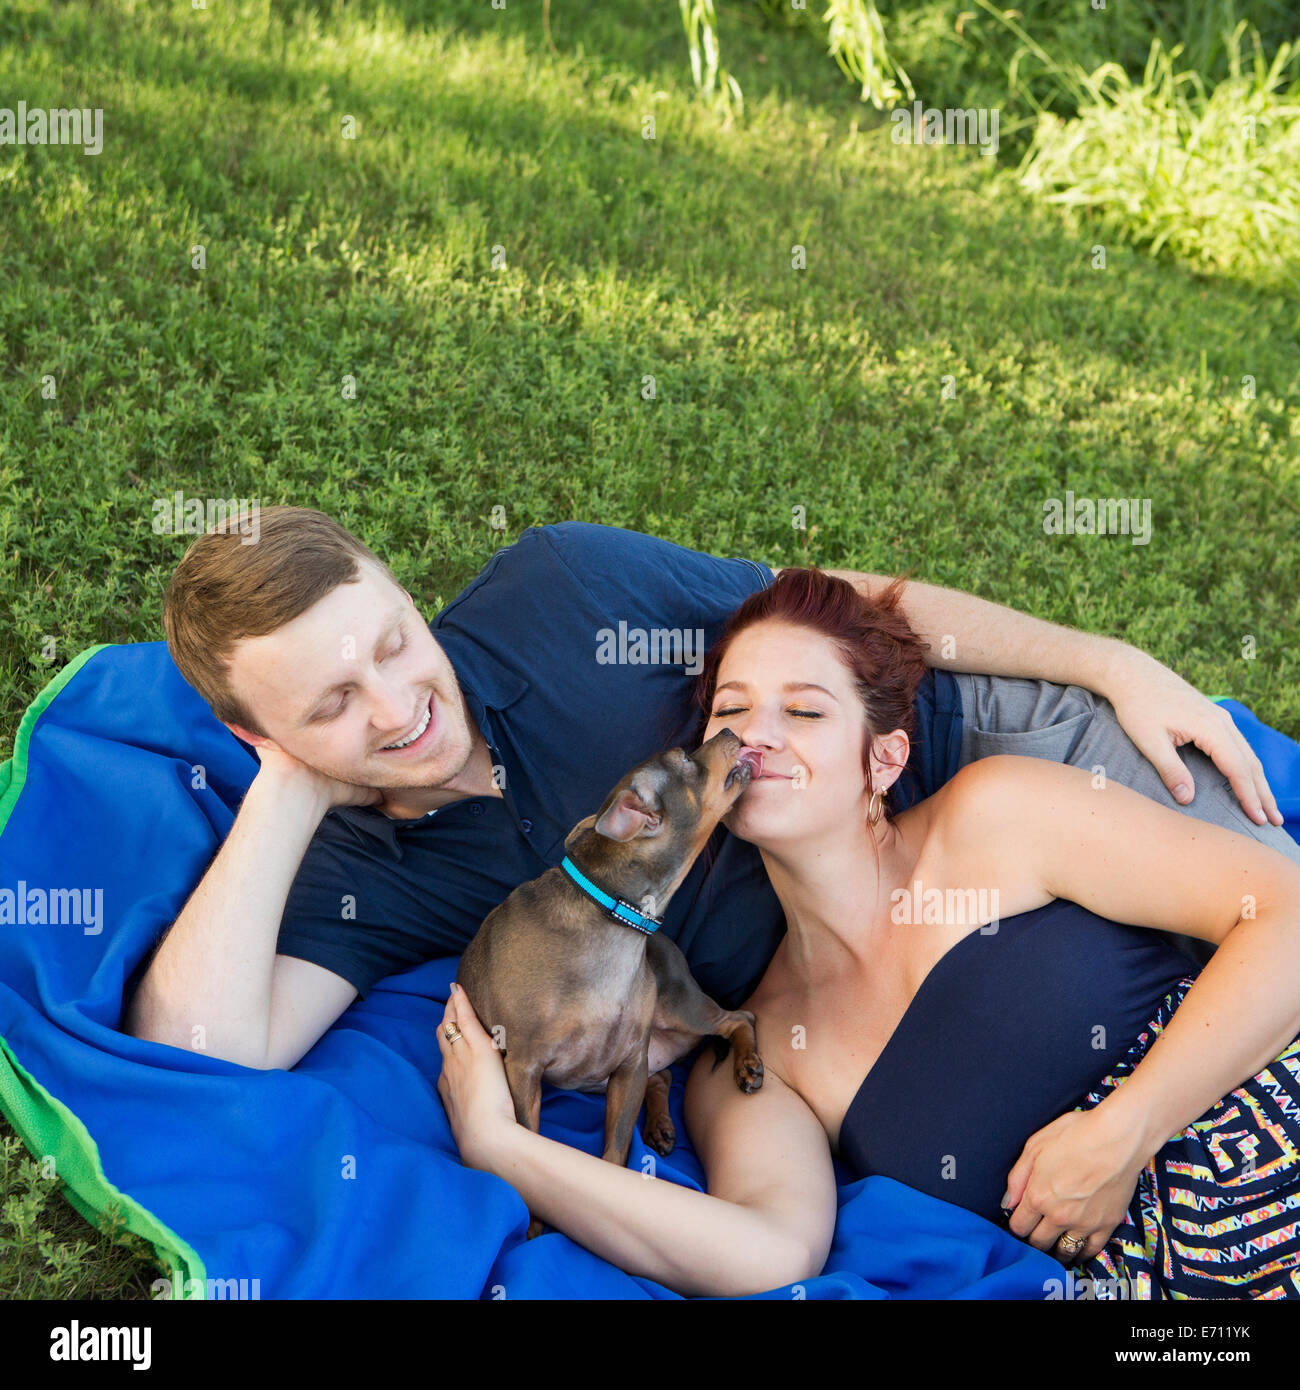 Un giovane seduto su un picnic rug. Un piccolo cane che lambisce il volto di una donna. Foto Stock